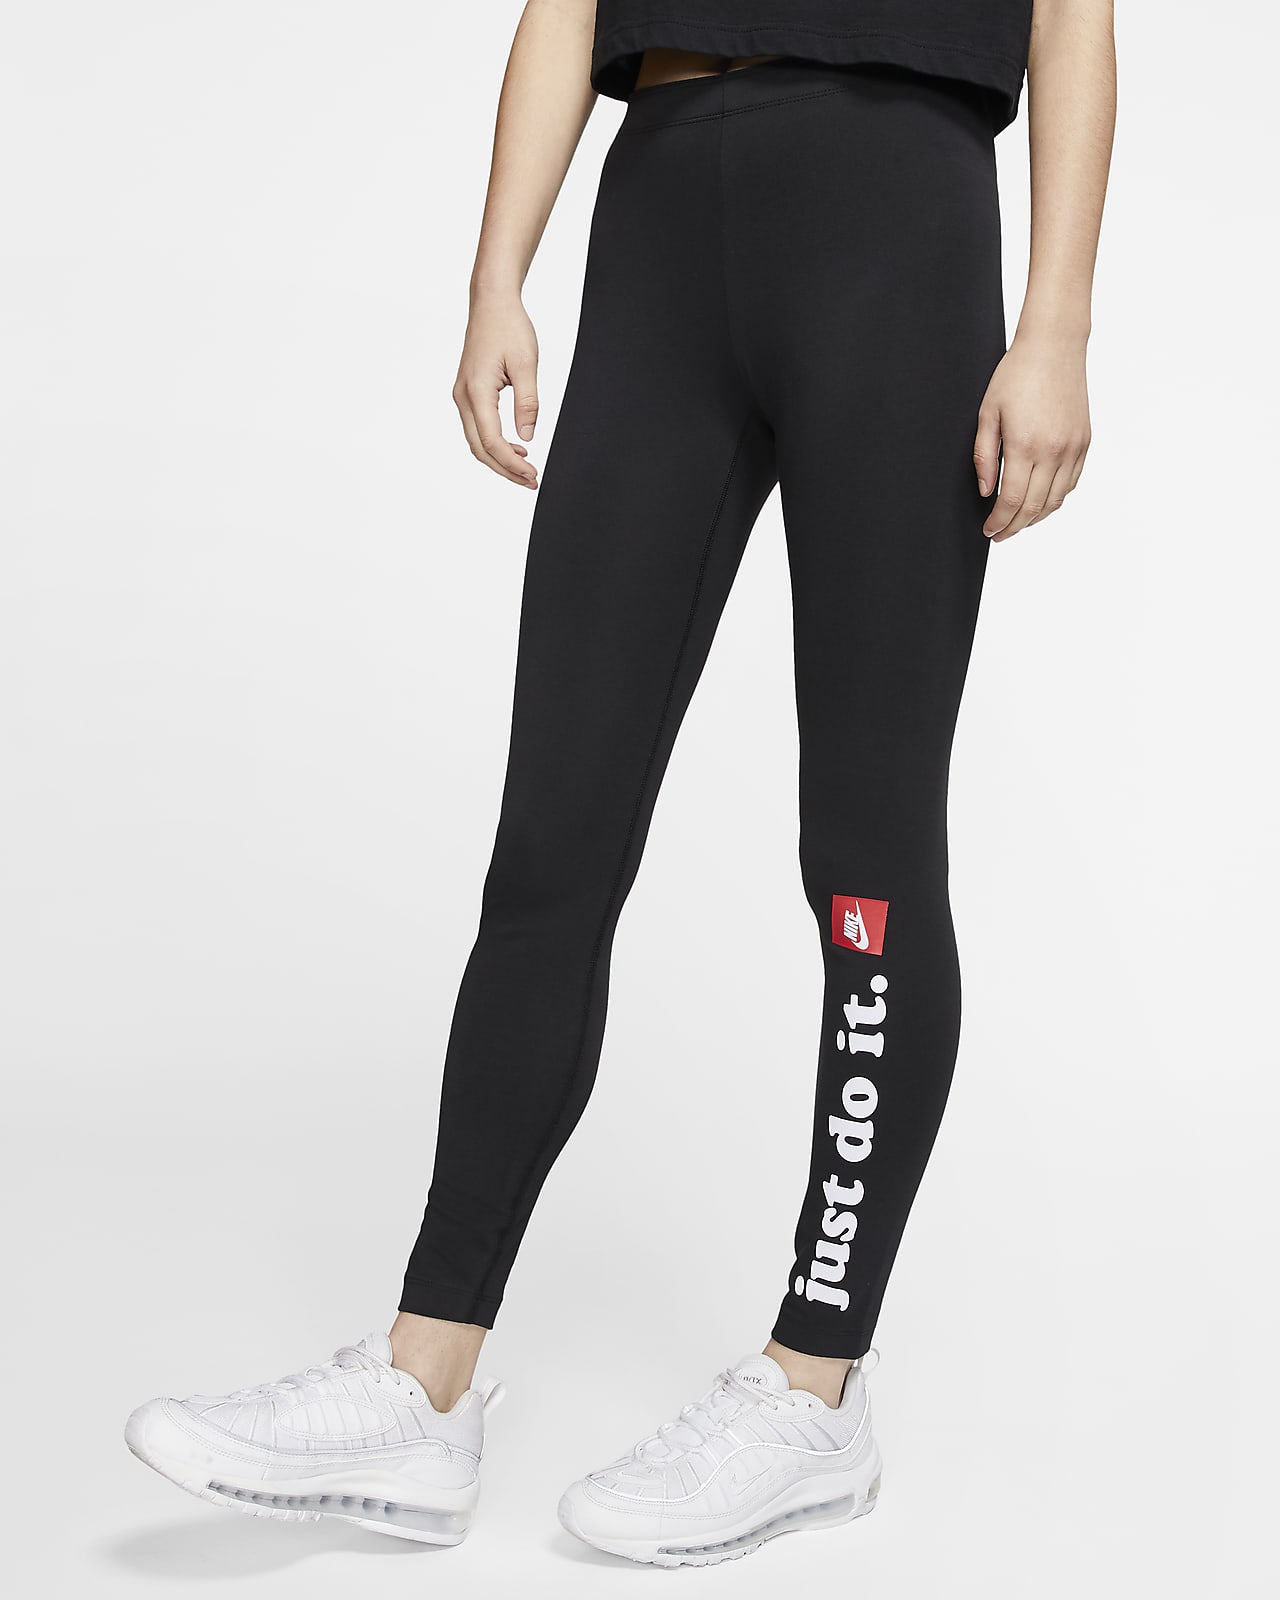 Nike Leggings pour femme gris/noir 